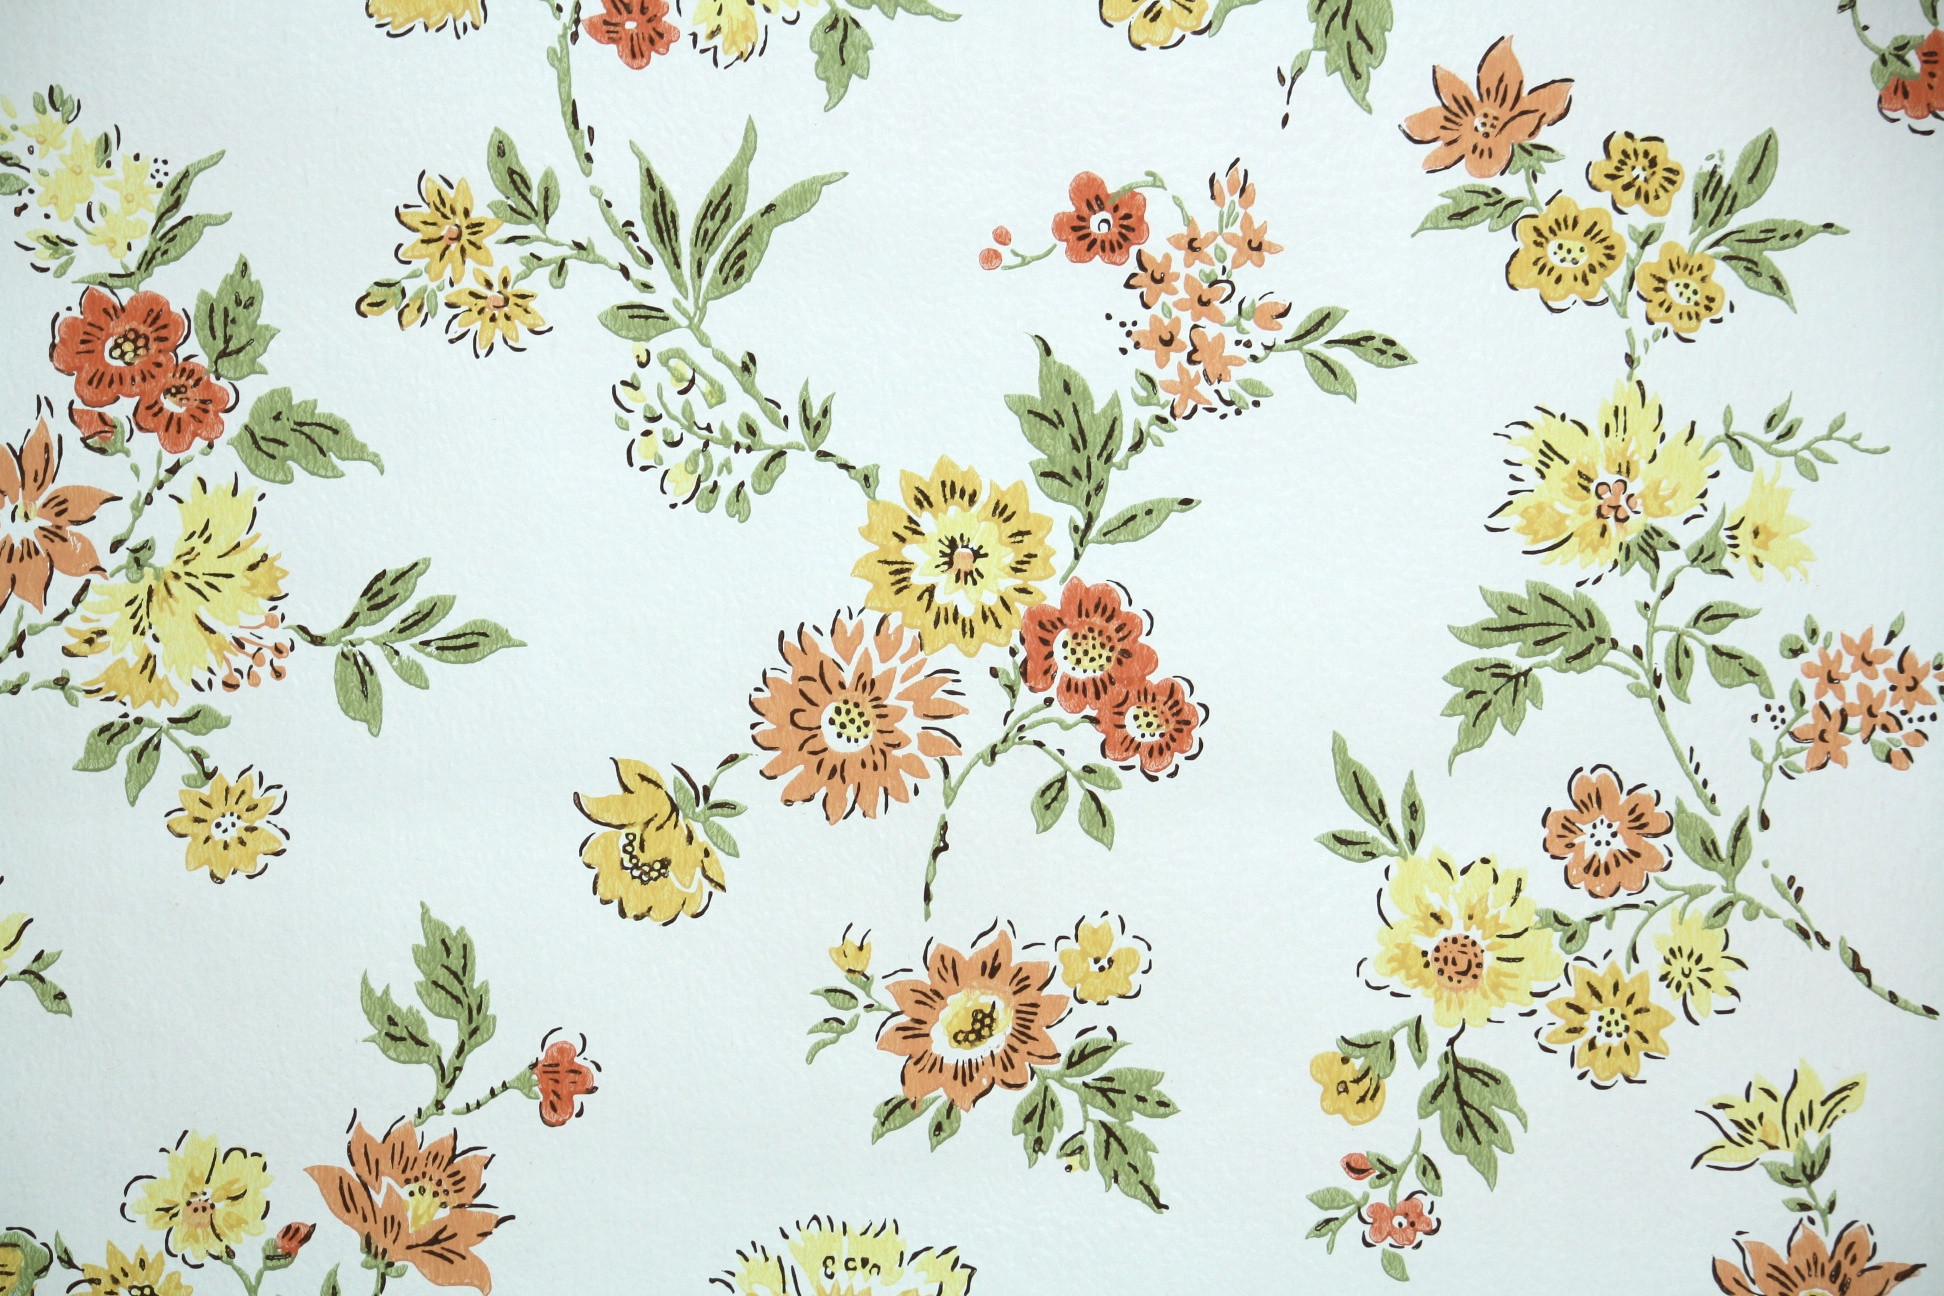  Vintage  Flowers  Wallpaper  nh p